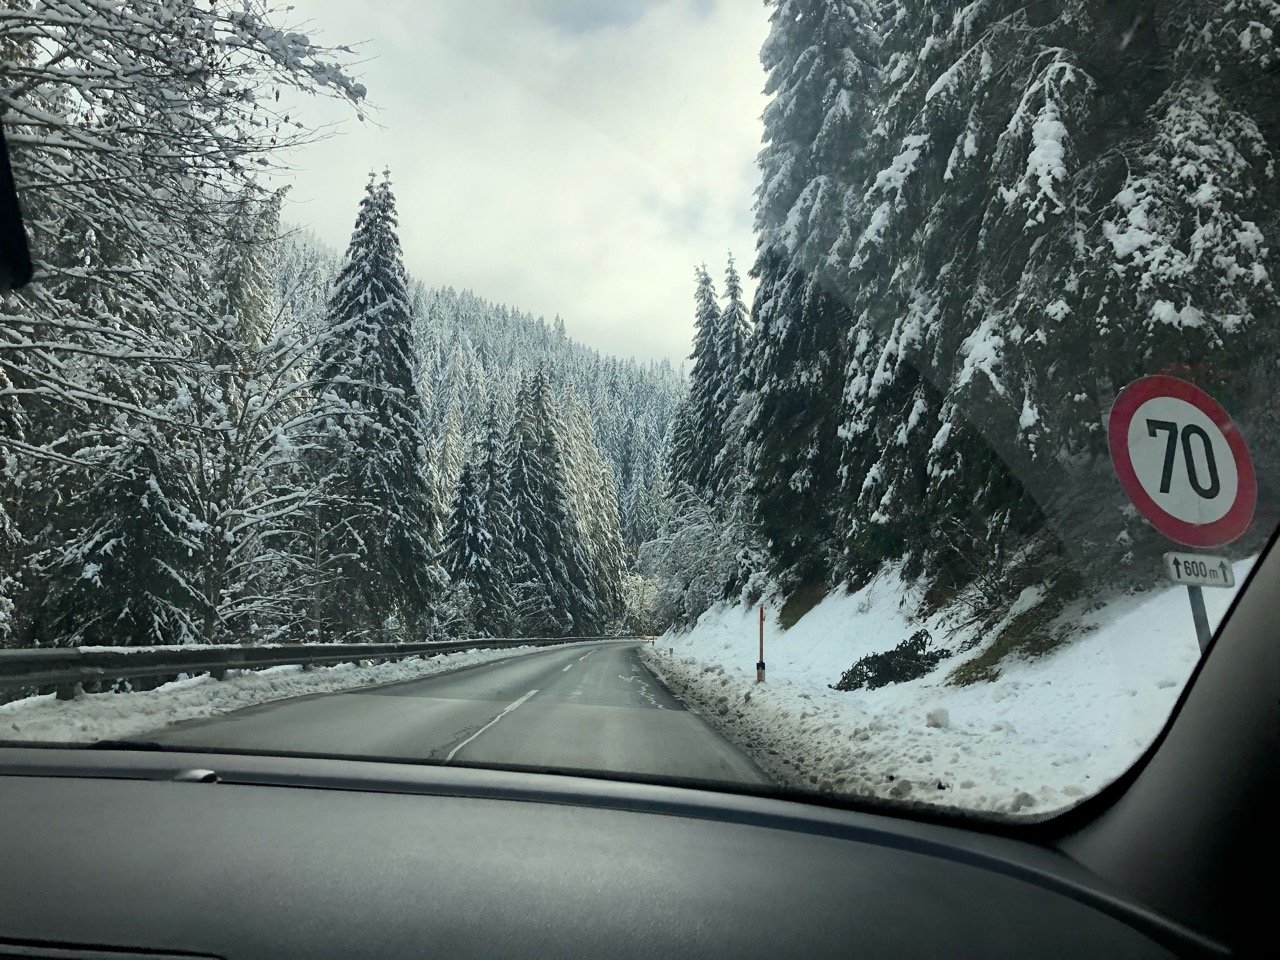 Zusammenhängende Schneedecke in Naturkalender App spotted by Morgentau on 12.12.2020